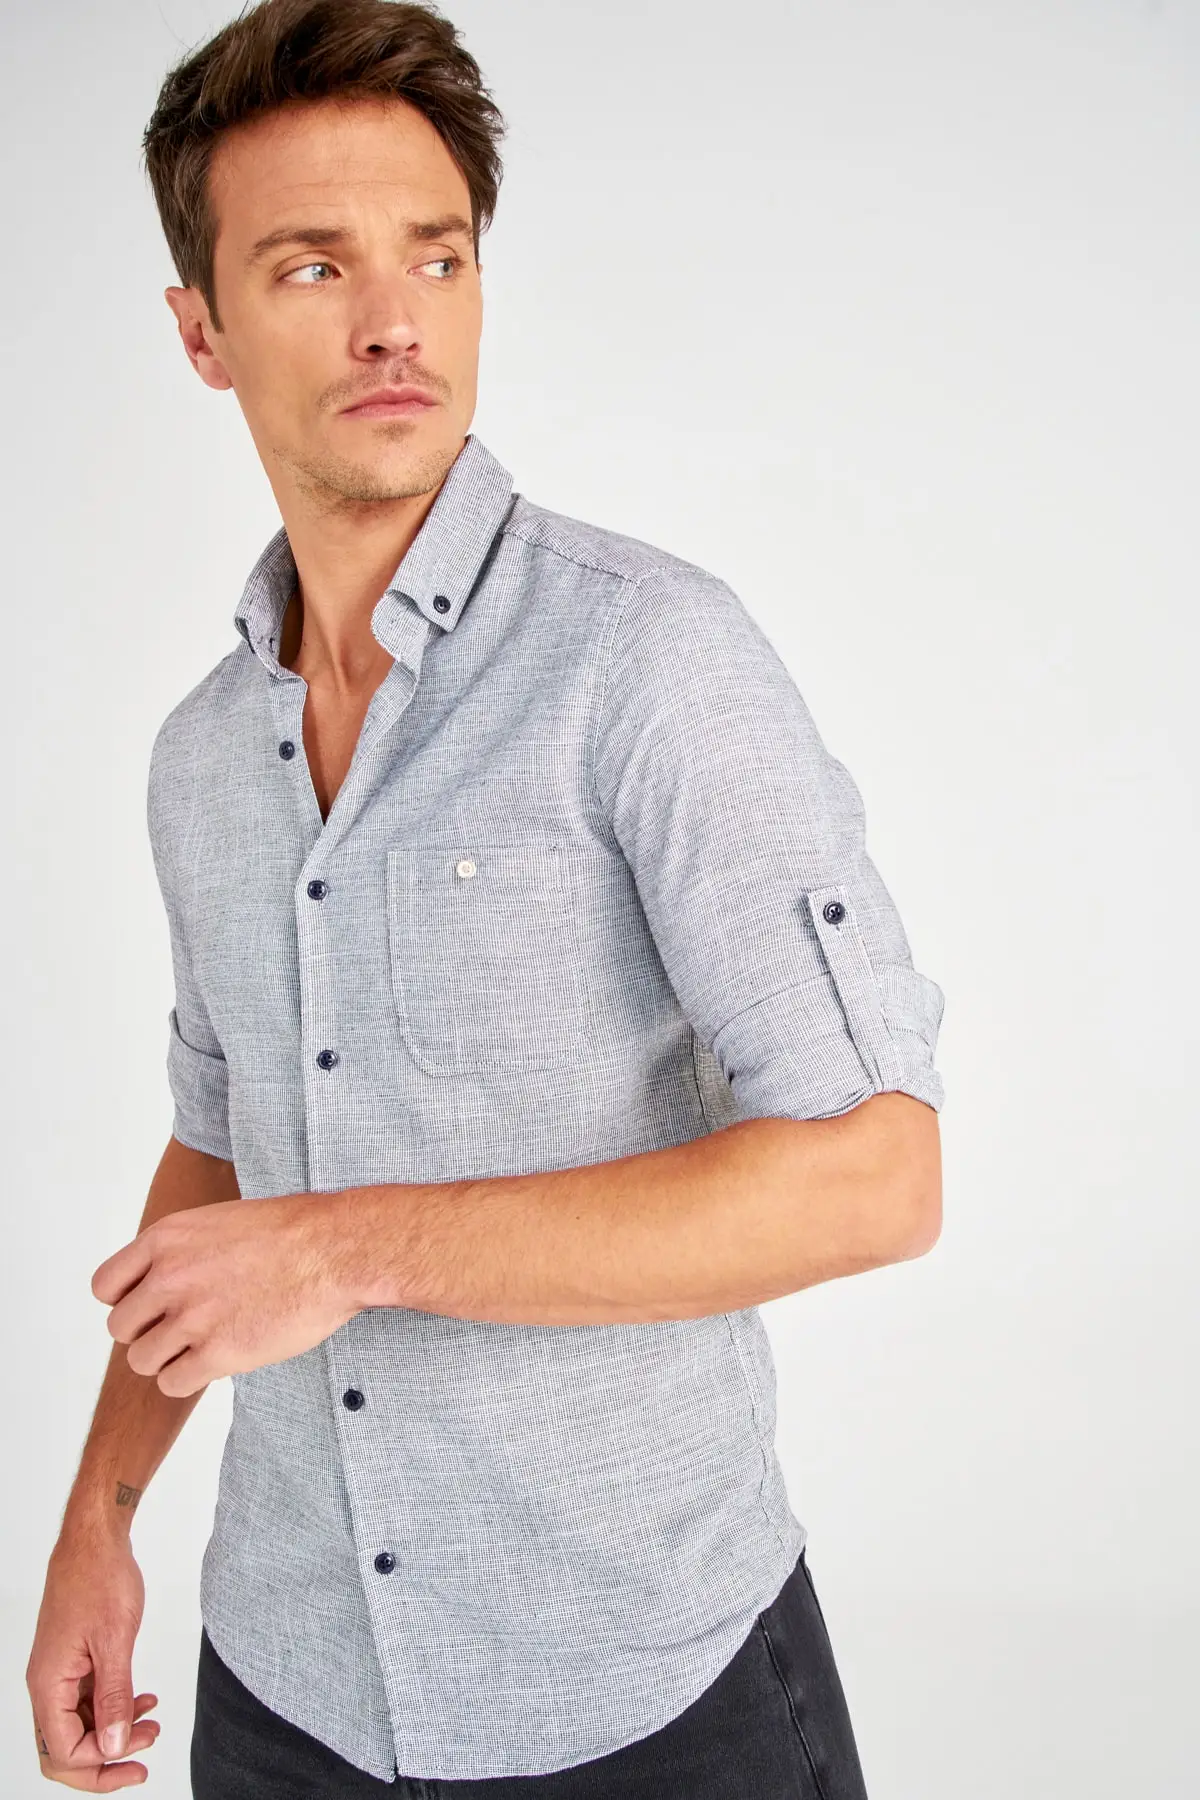 Мужская приталенная рубашка с одним карманом на пуговицах мужская одежда